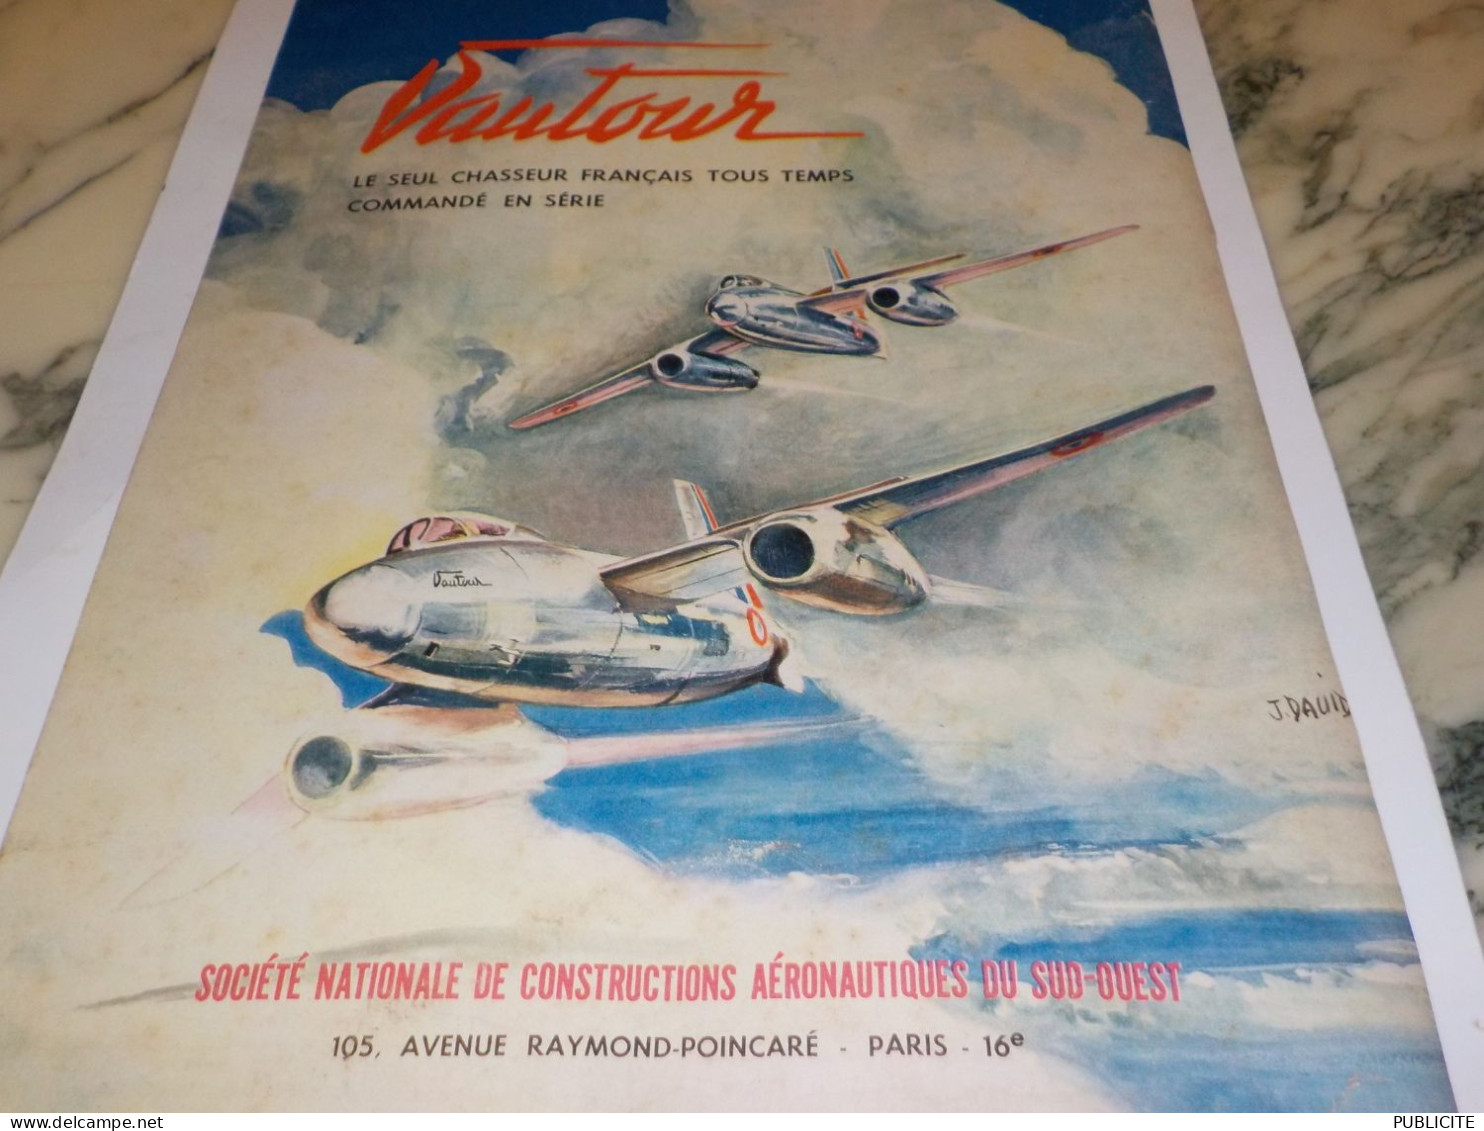 ANCIENNE PUBLICITE CHASSEUR FRANCAIS VAUTOUR 1955 - Werbung